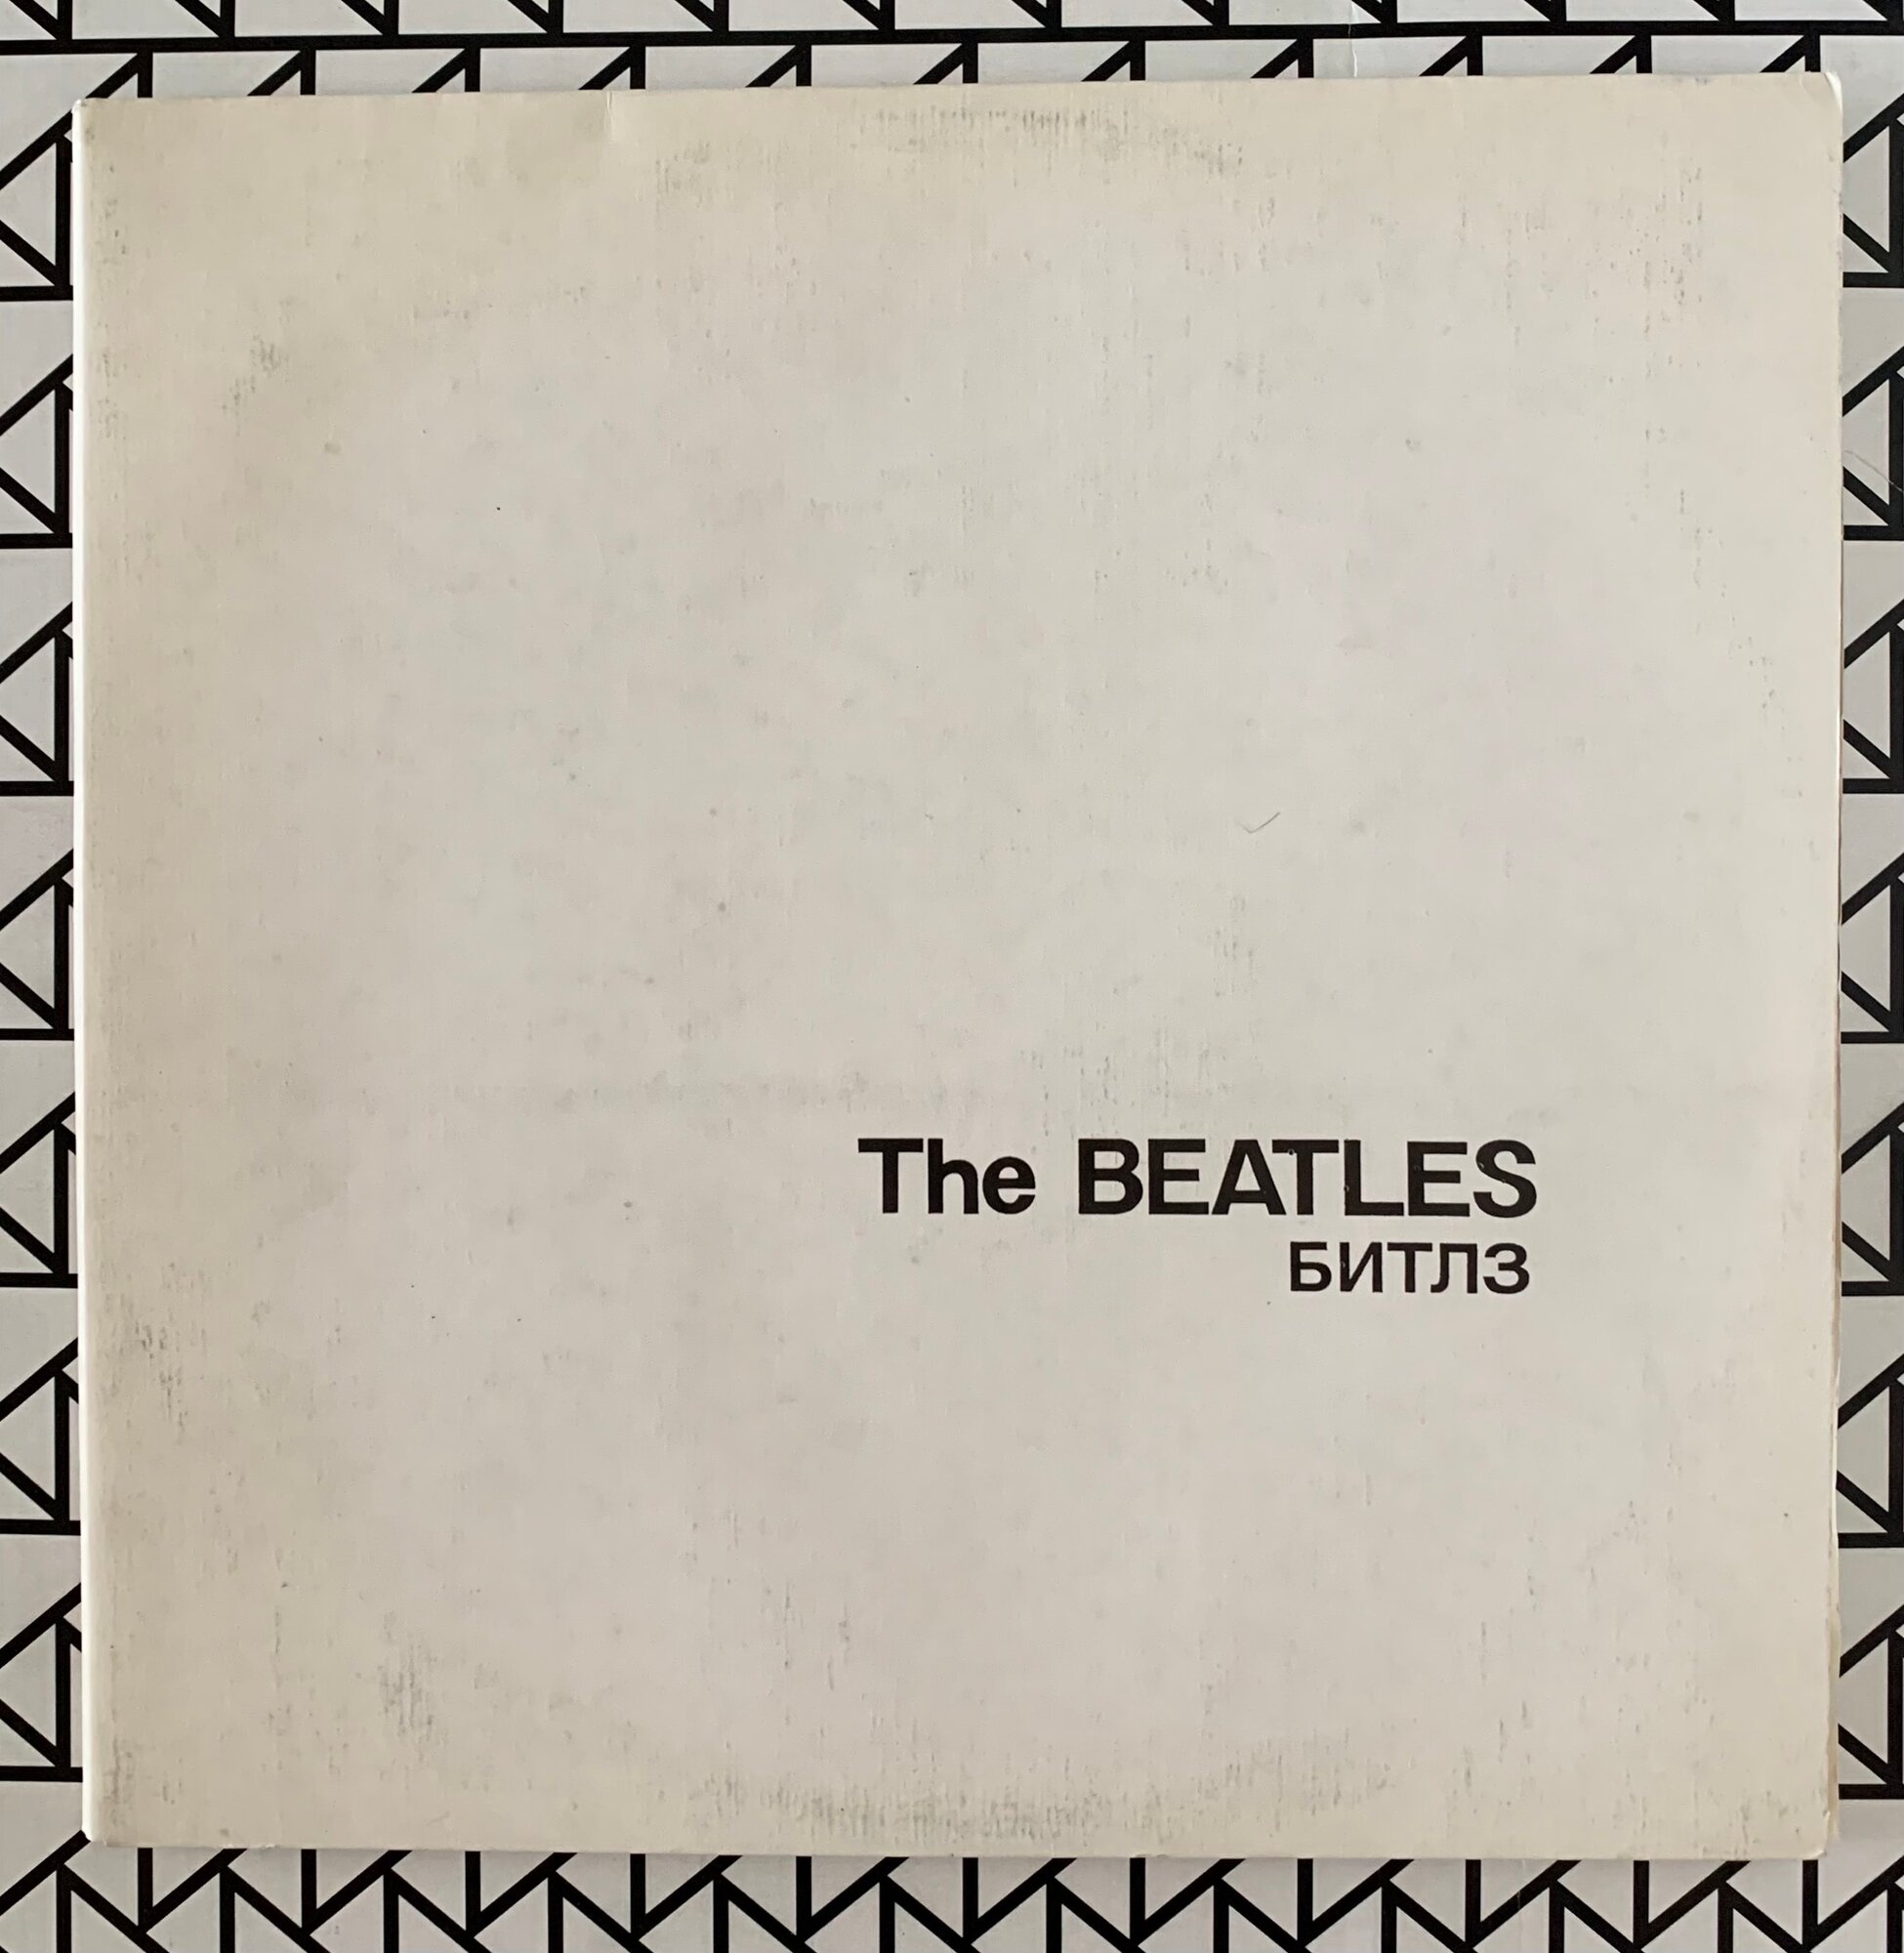 Виниловая пластинка "The Beatles" (2LP), 1991 года